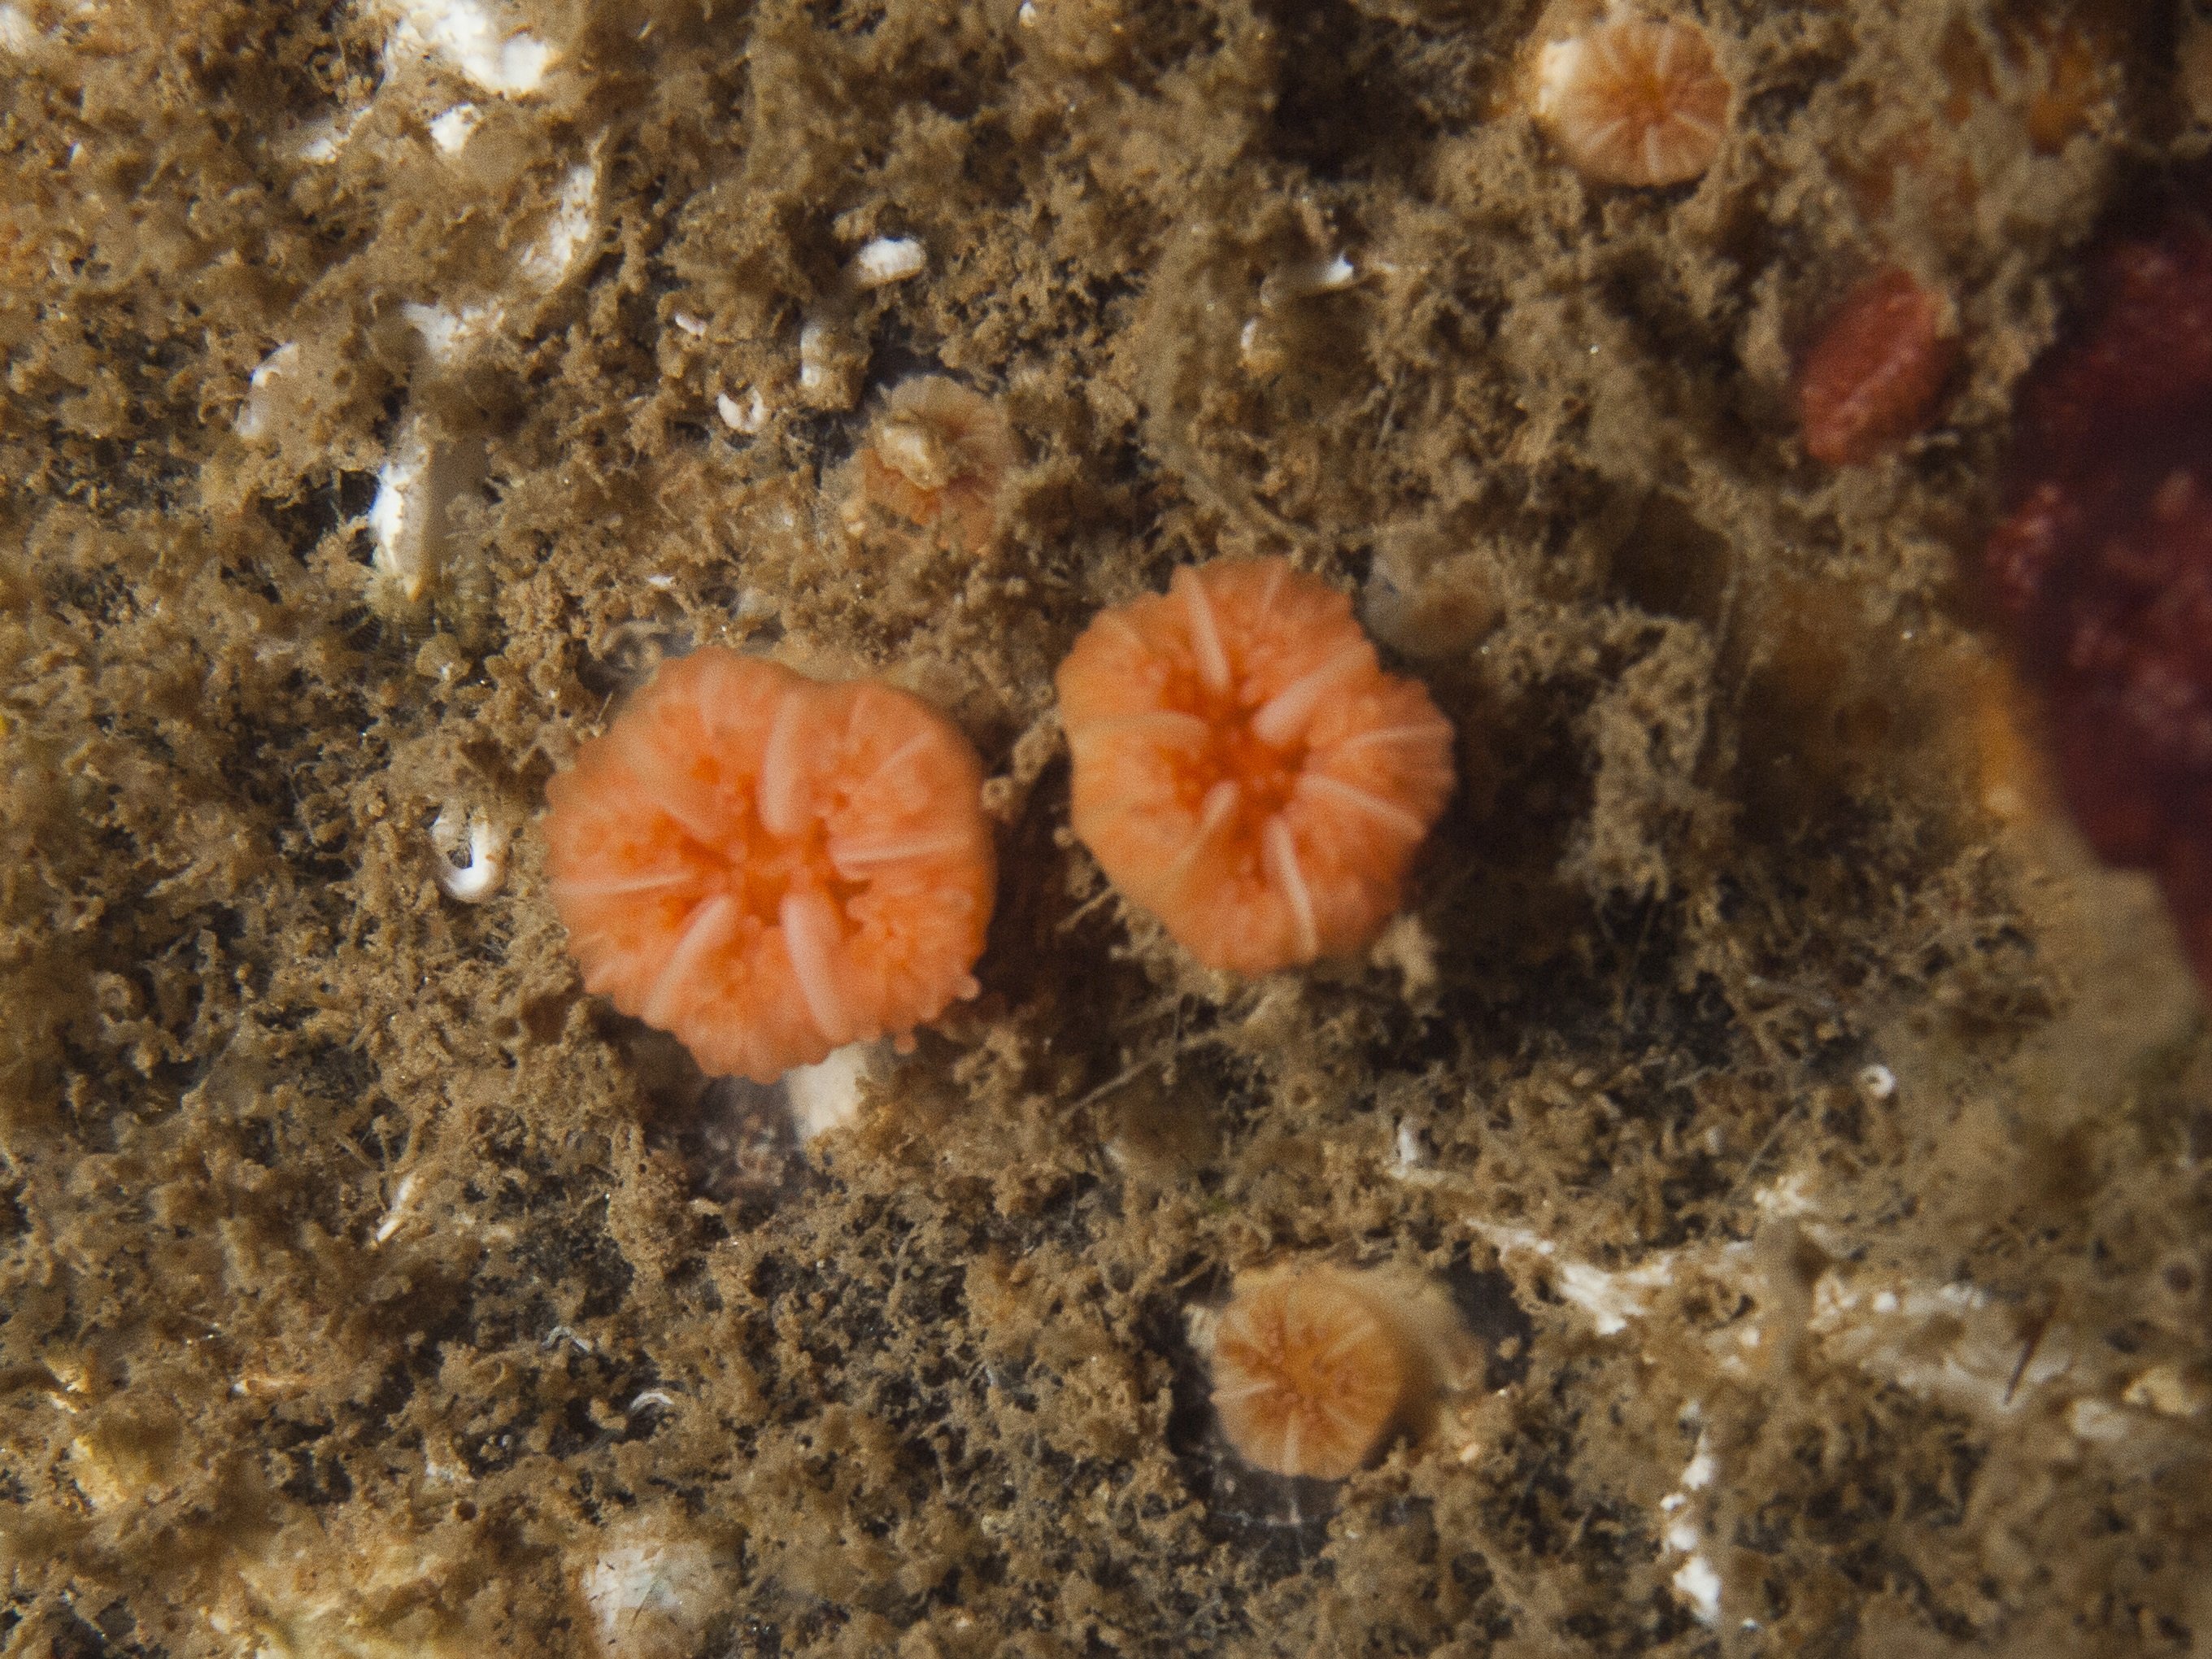 Coral solitario Balanophyllia regia